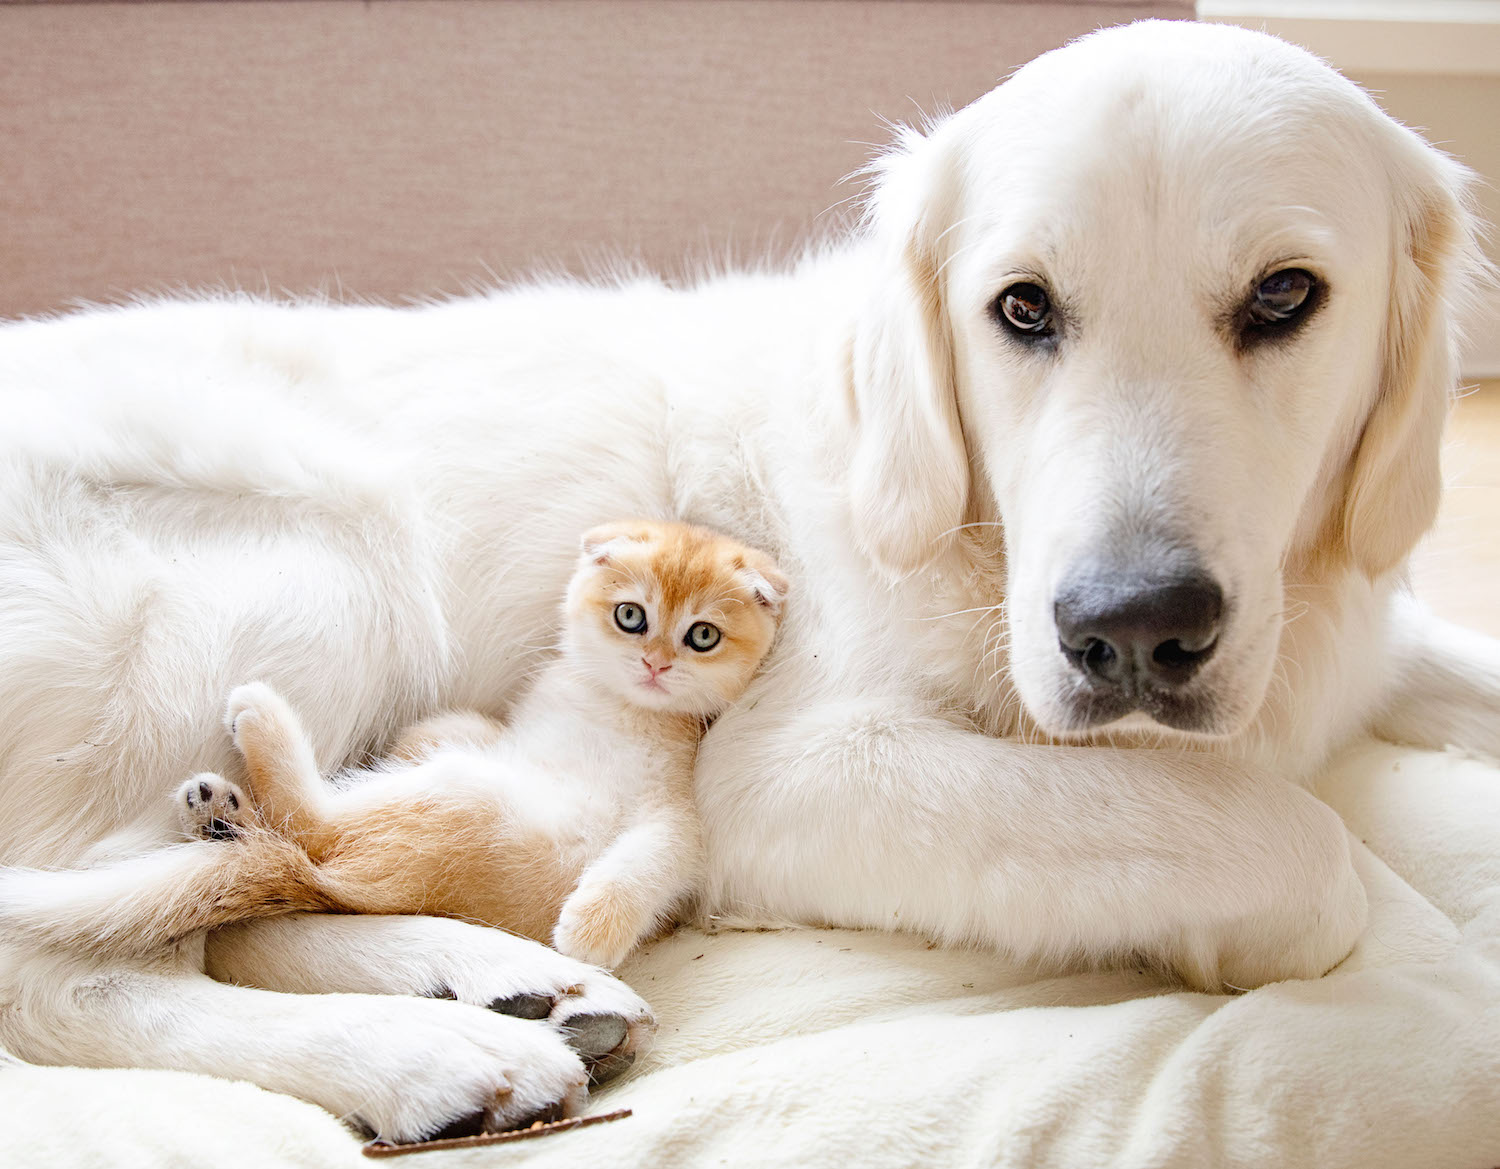 Một hình ảnh tuyệt vời về tình bạn giữa chú chó và mèo con. Cảm nhận được sự ấm áp và tình cảm đong đầy trong bức ảnh này.